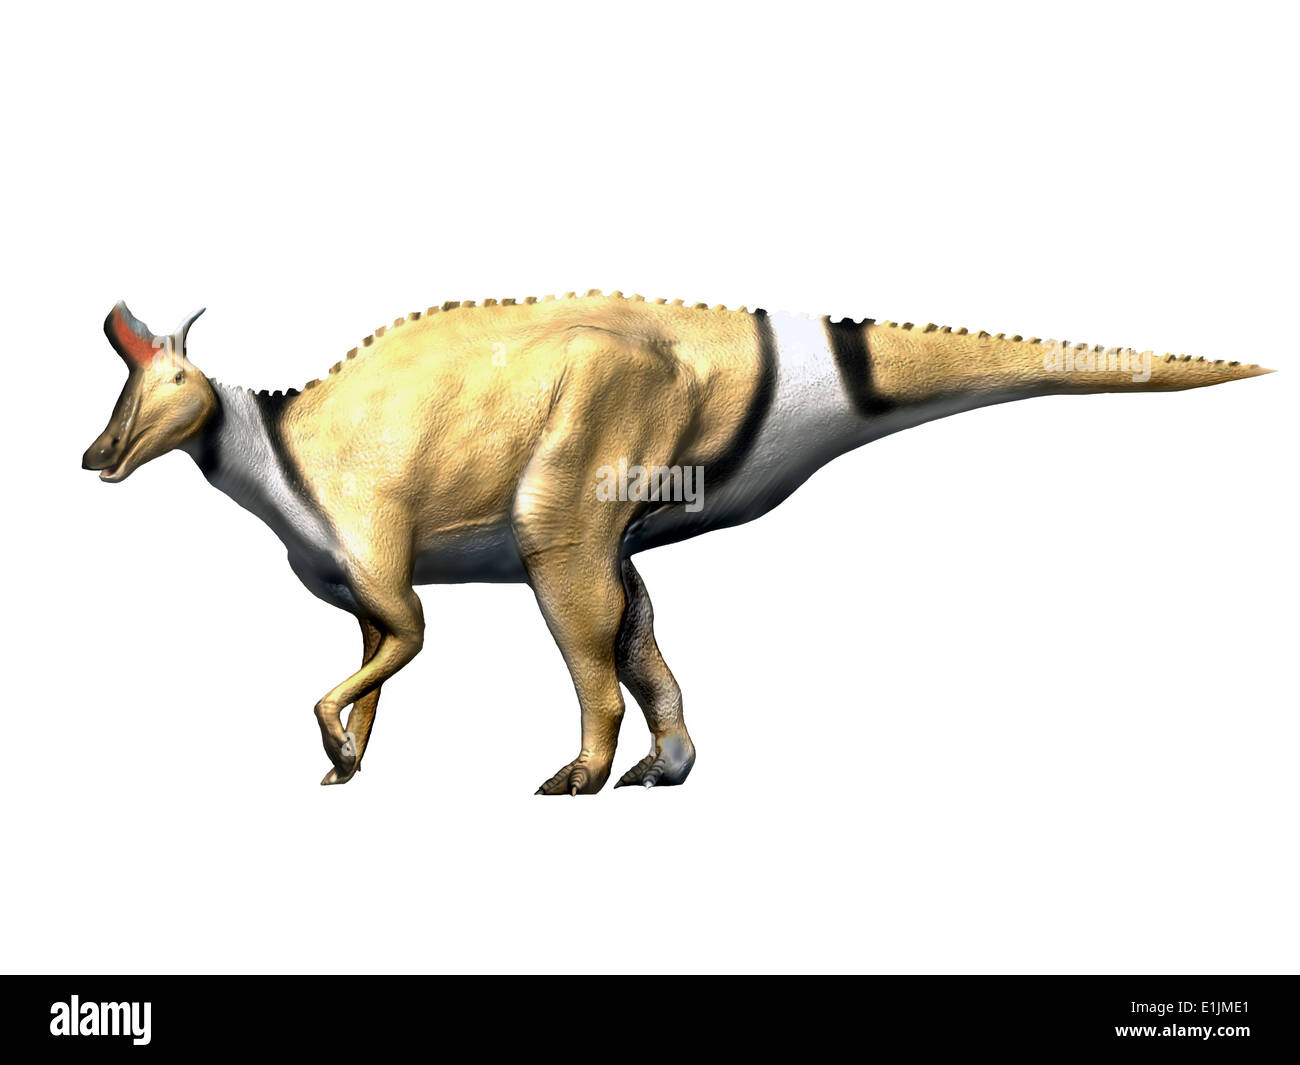 Lambeosaurus dinosaur, white background. Stock Photo